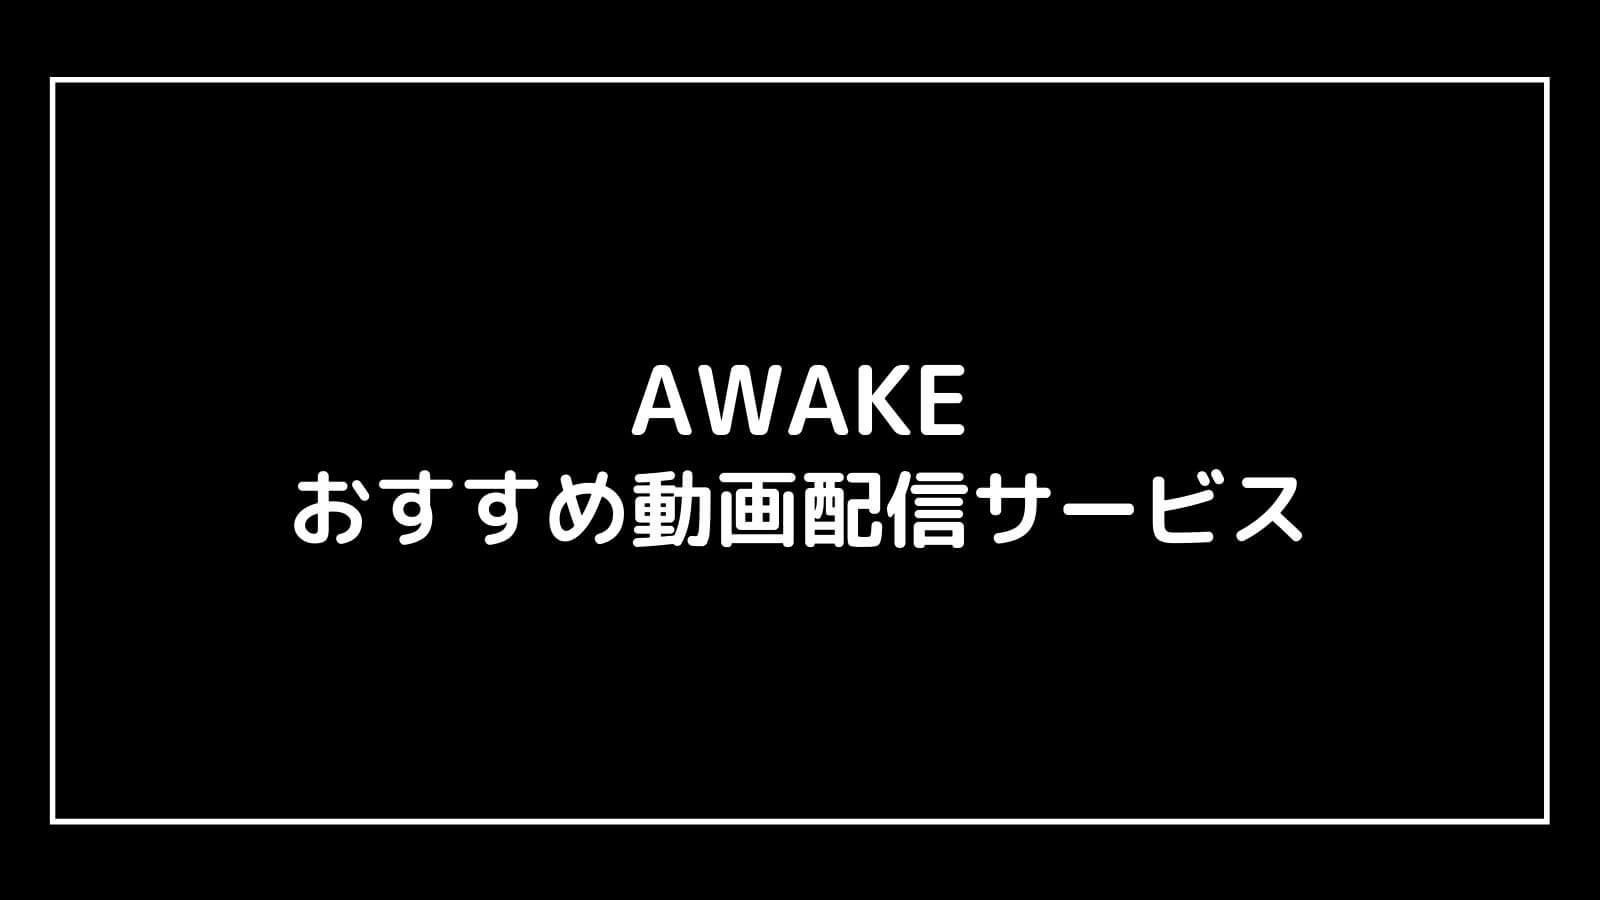 『AWAKE』の無料映画をフル視聴できるおすすめ動画配信サービス